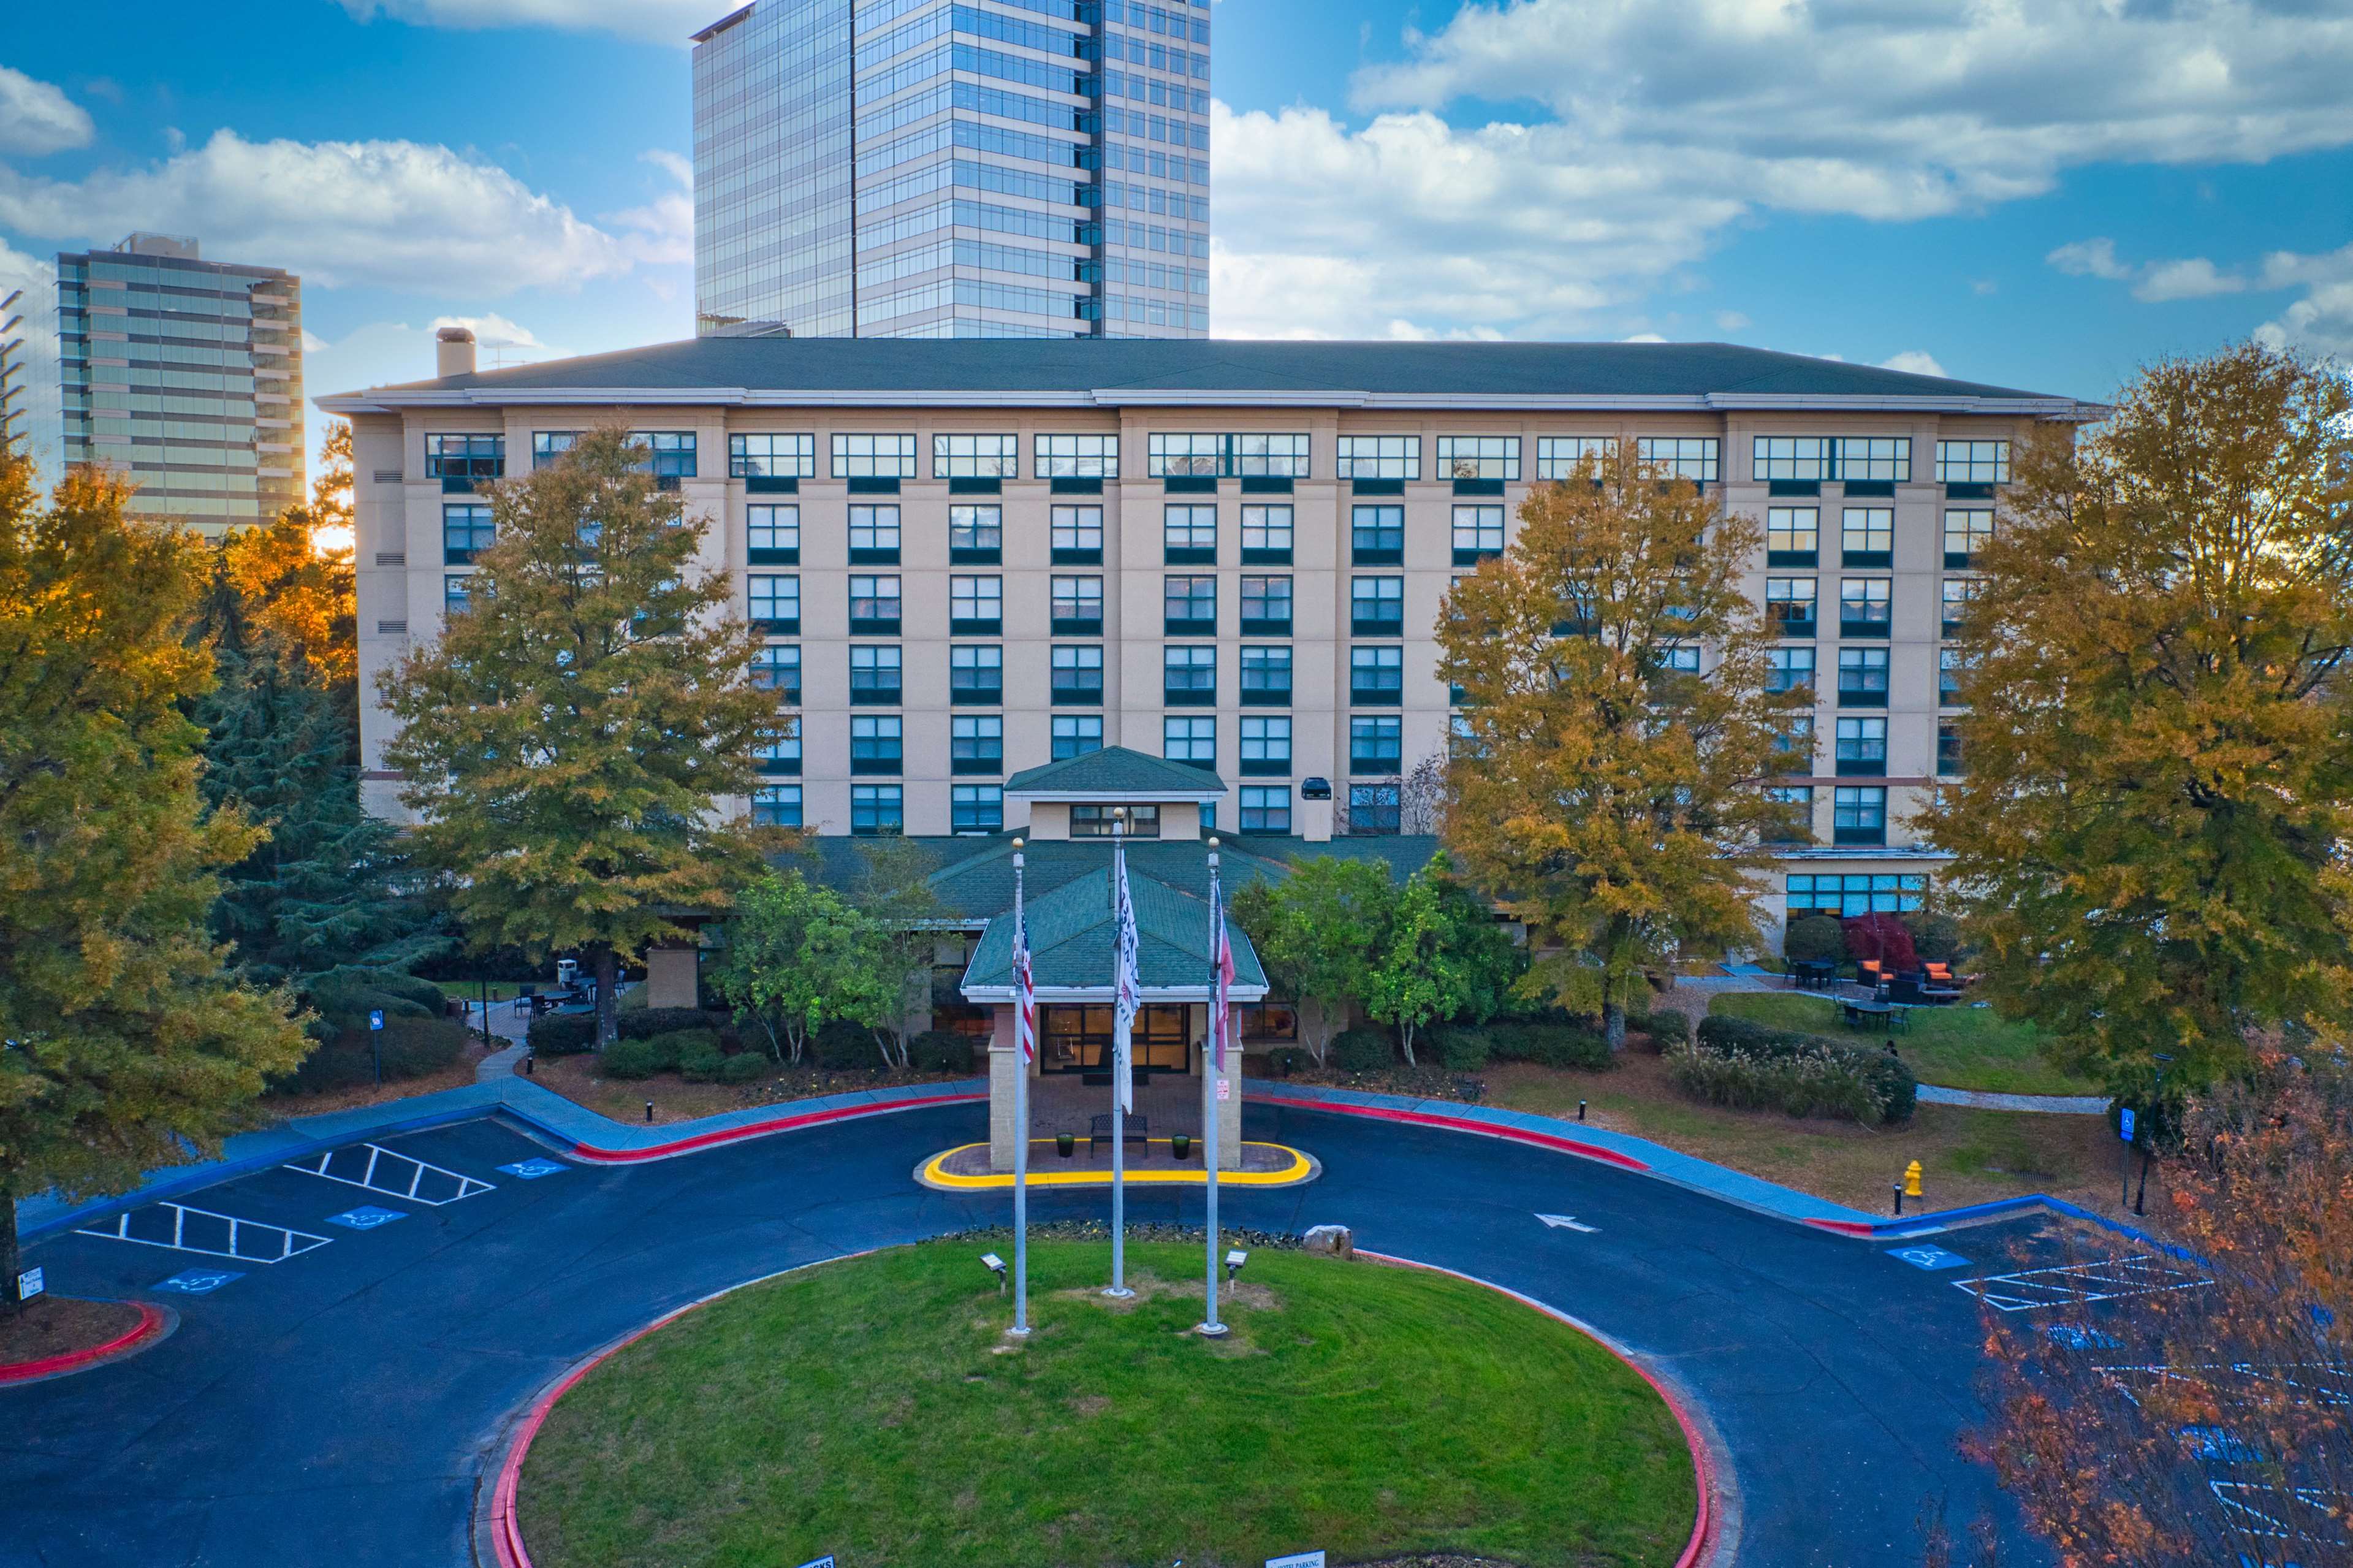 Hilton Garden Inn Atlanta Perimeter Center